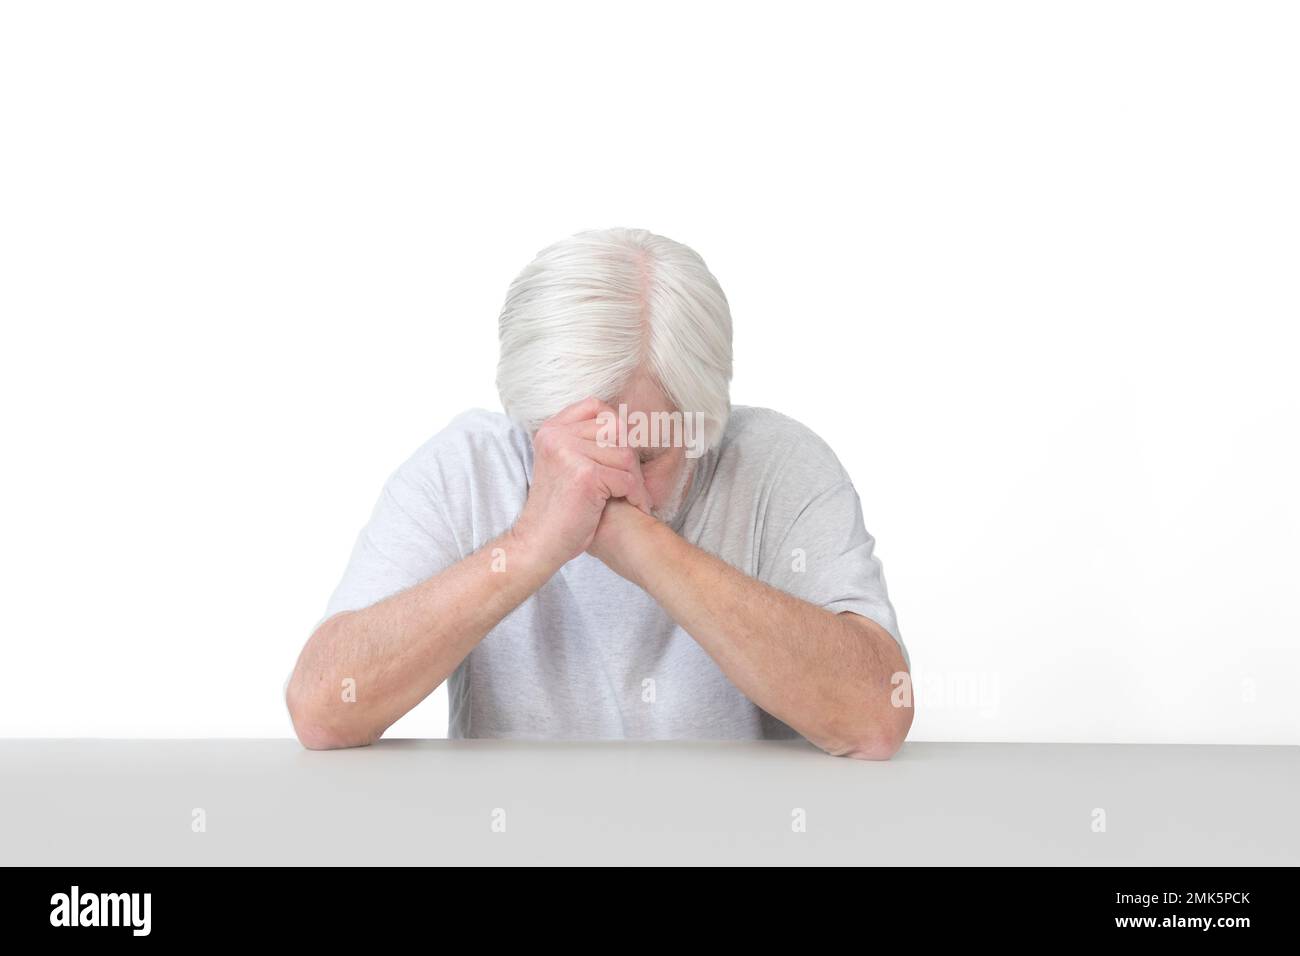 Horizontale Aufnahme eines alten Mannes, dessen Ellbogen sich auf einem Tischkopf verbeugt im Gebet. Isoliert auf weiß. Viel Platz zum Kopieren. Stockfoto